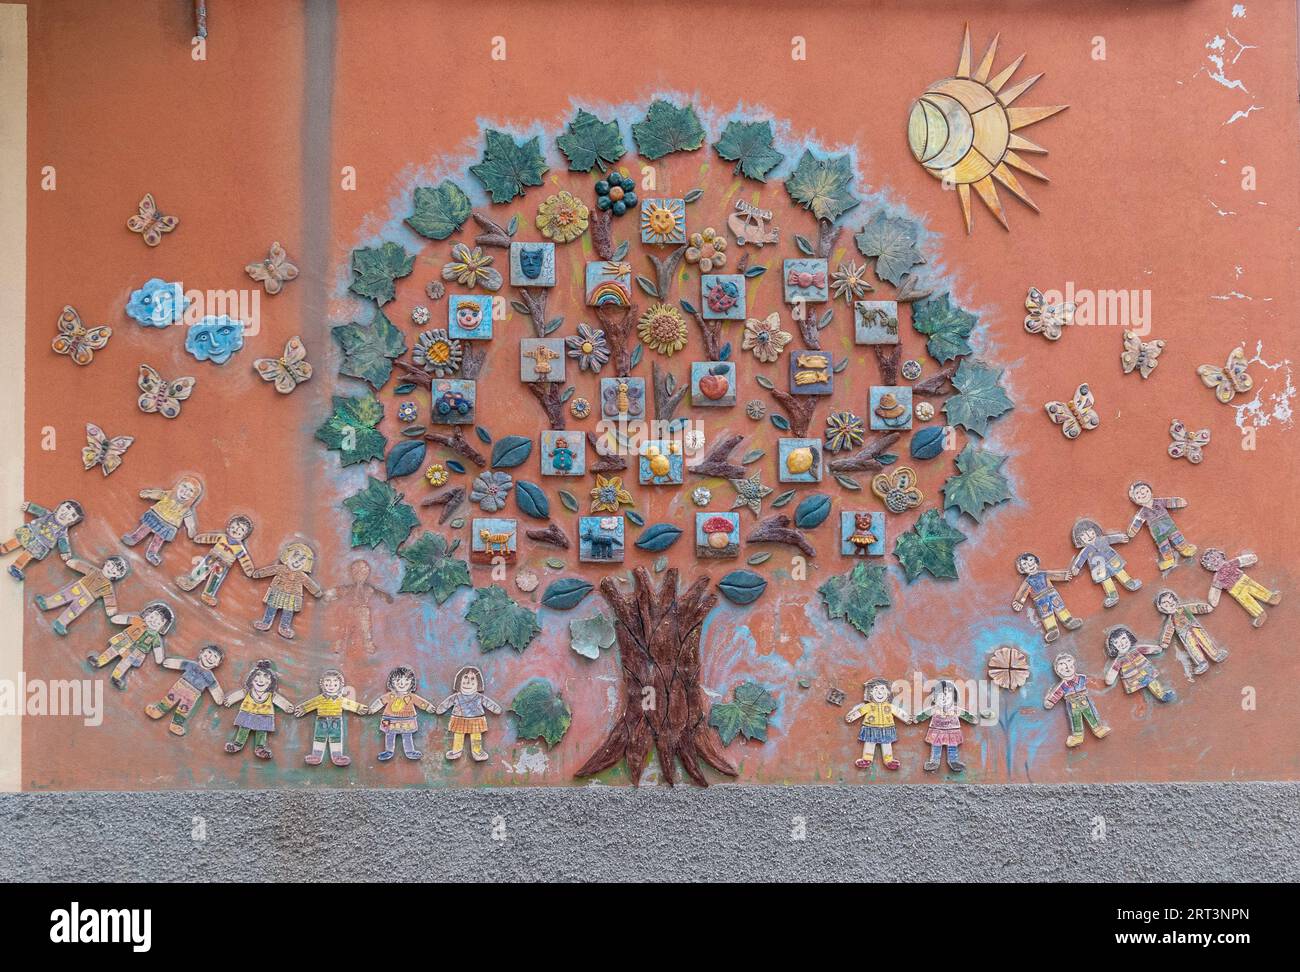 Dettaglio di una decorazione murale in ceramica sulla facciata di un asilo che raffigura un grande albero circondato da bambini, Savona, Liguria, Italia Foto Stock